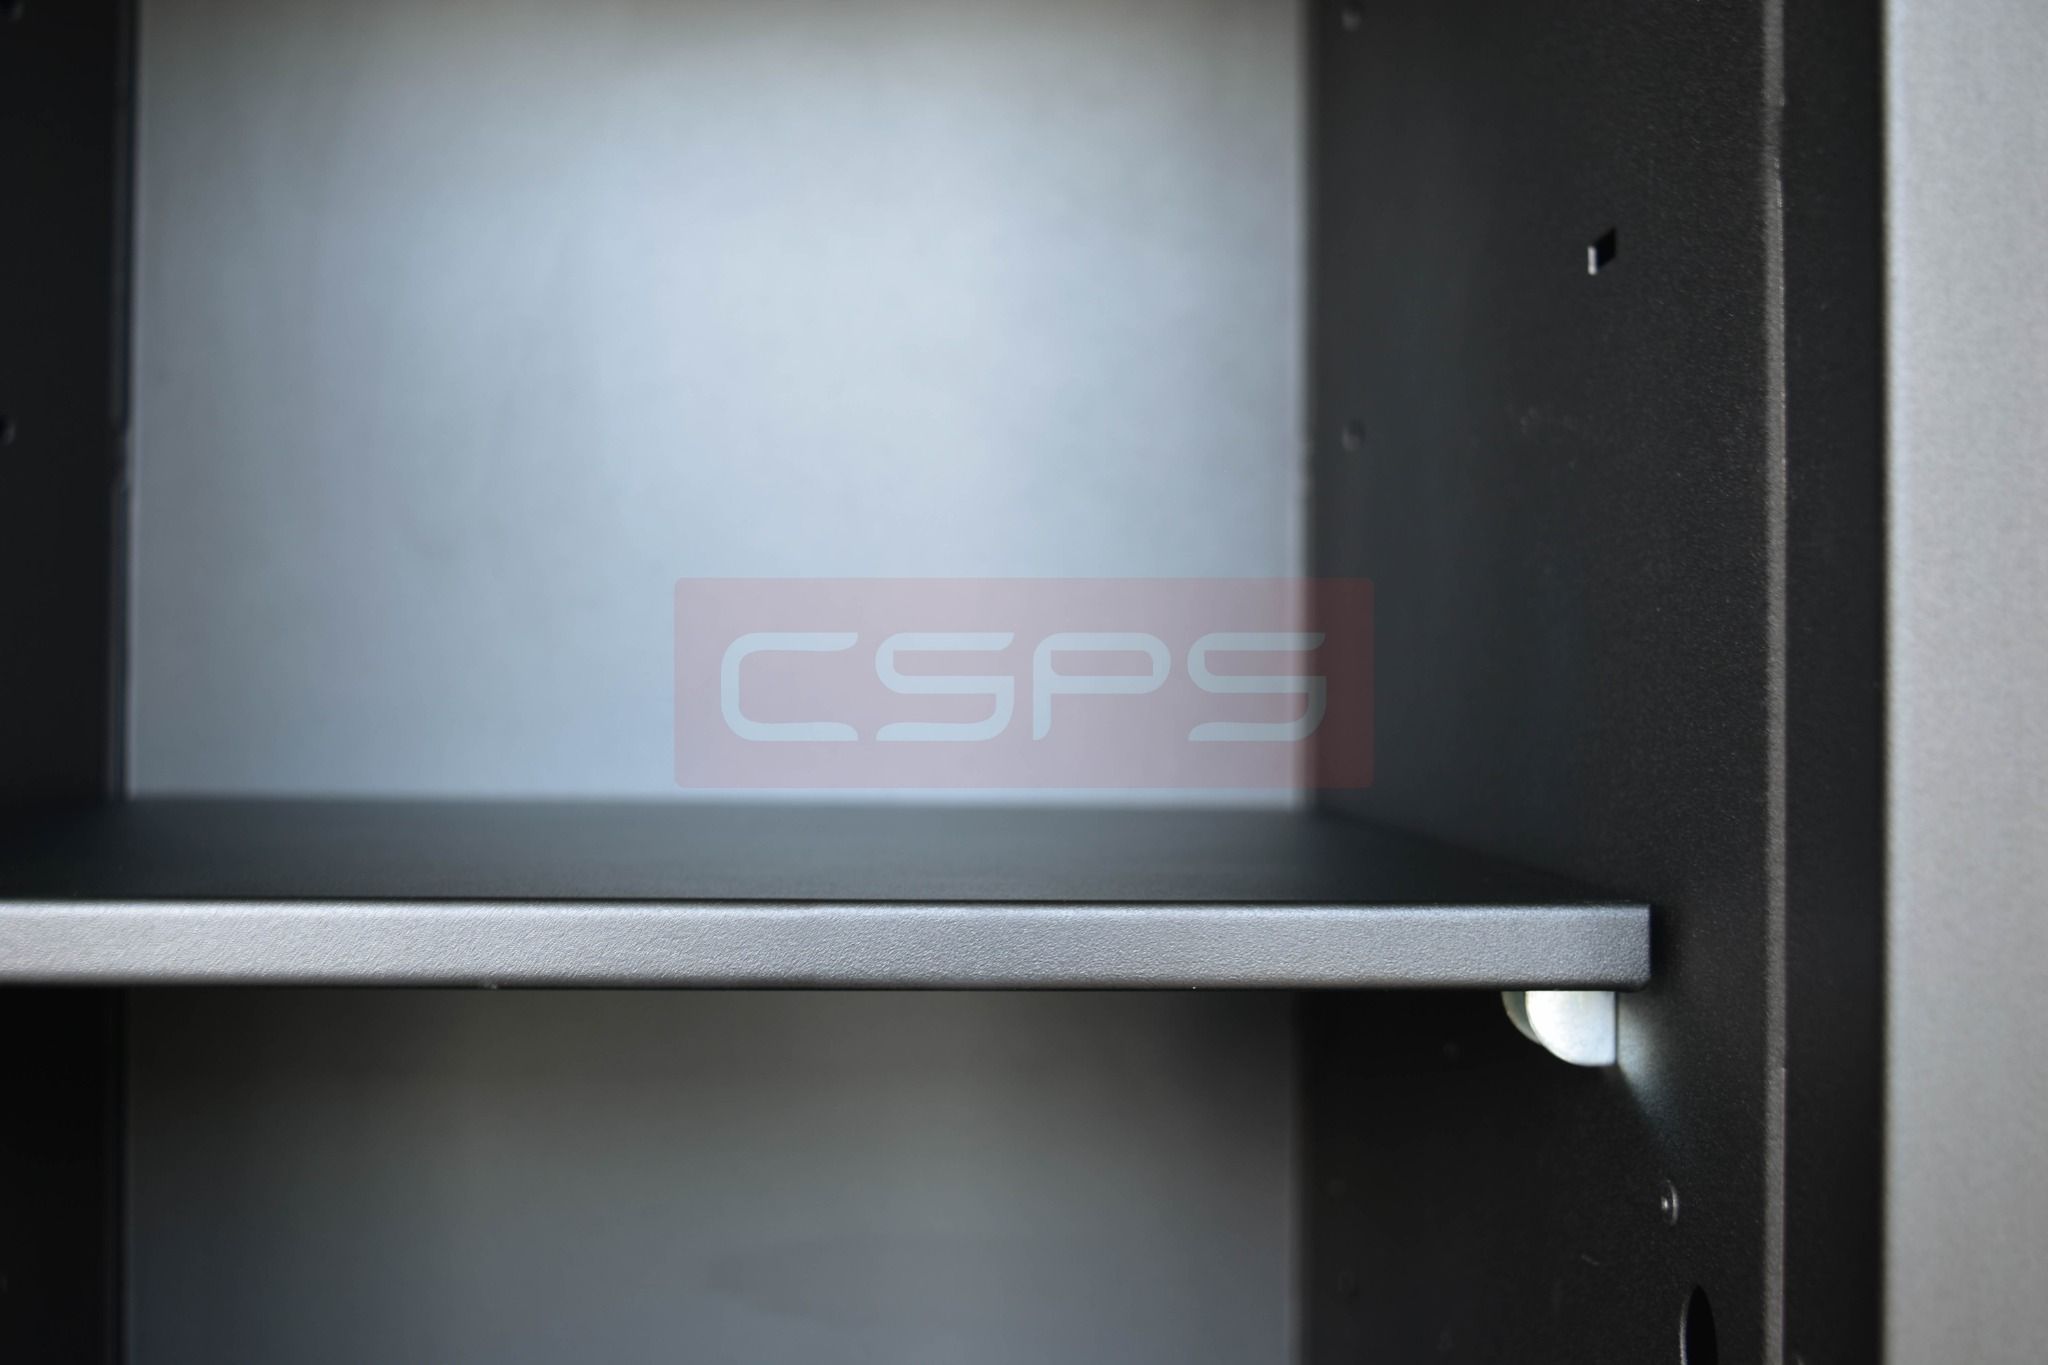  Tủ dụng cụ CSPS 48cm - 03 vách ngăn màu đen 